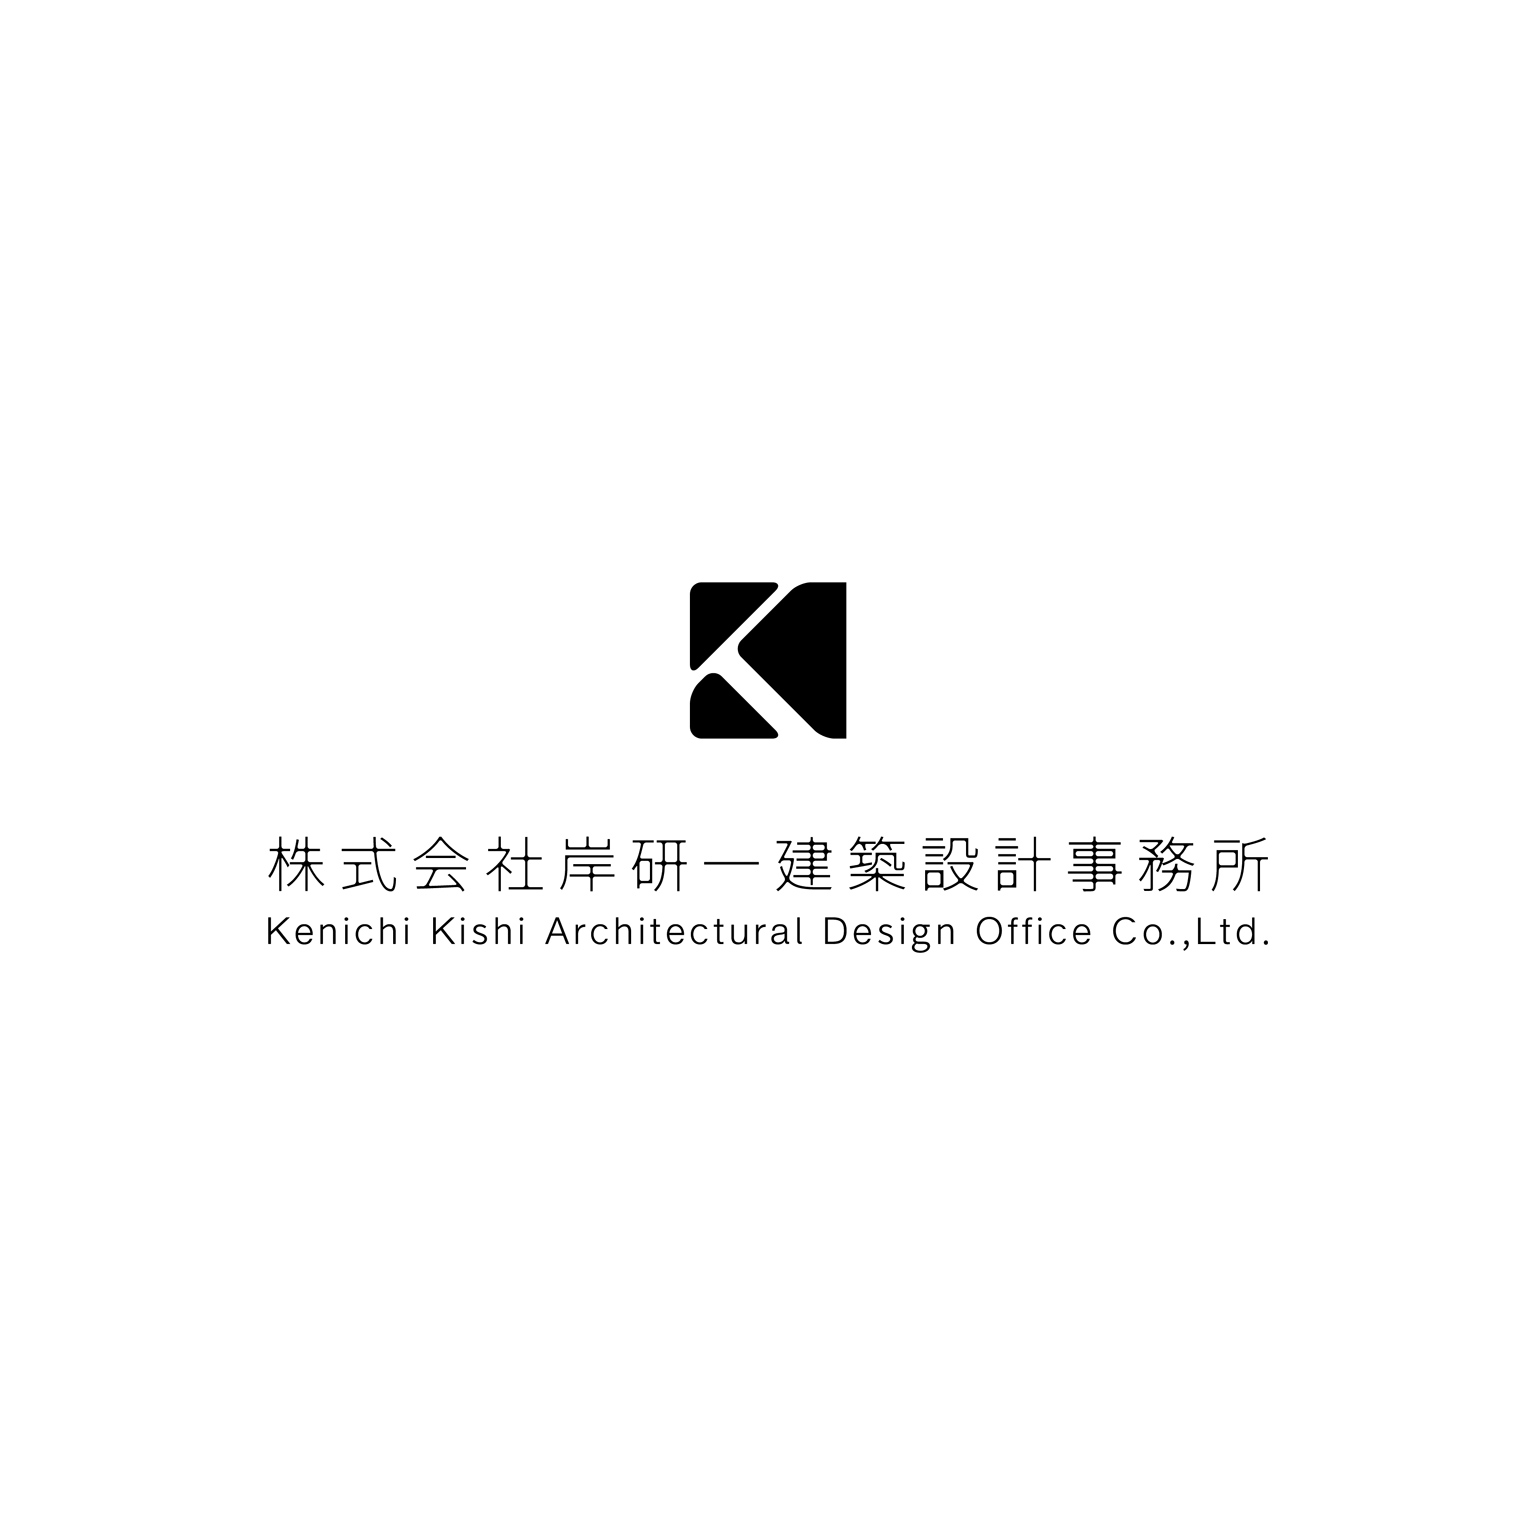 岸研一建築設計事務所 Logo